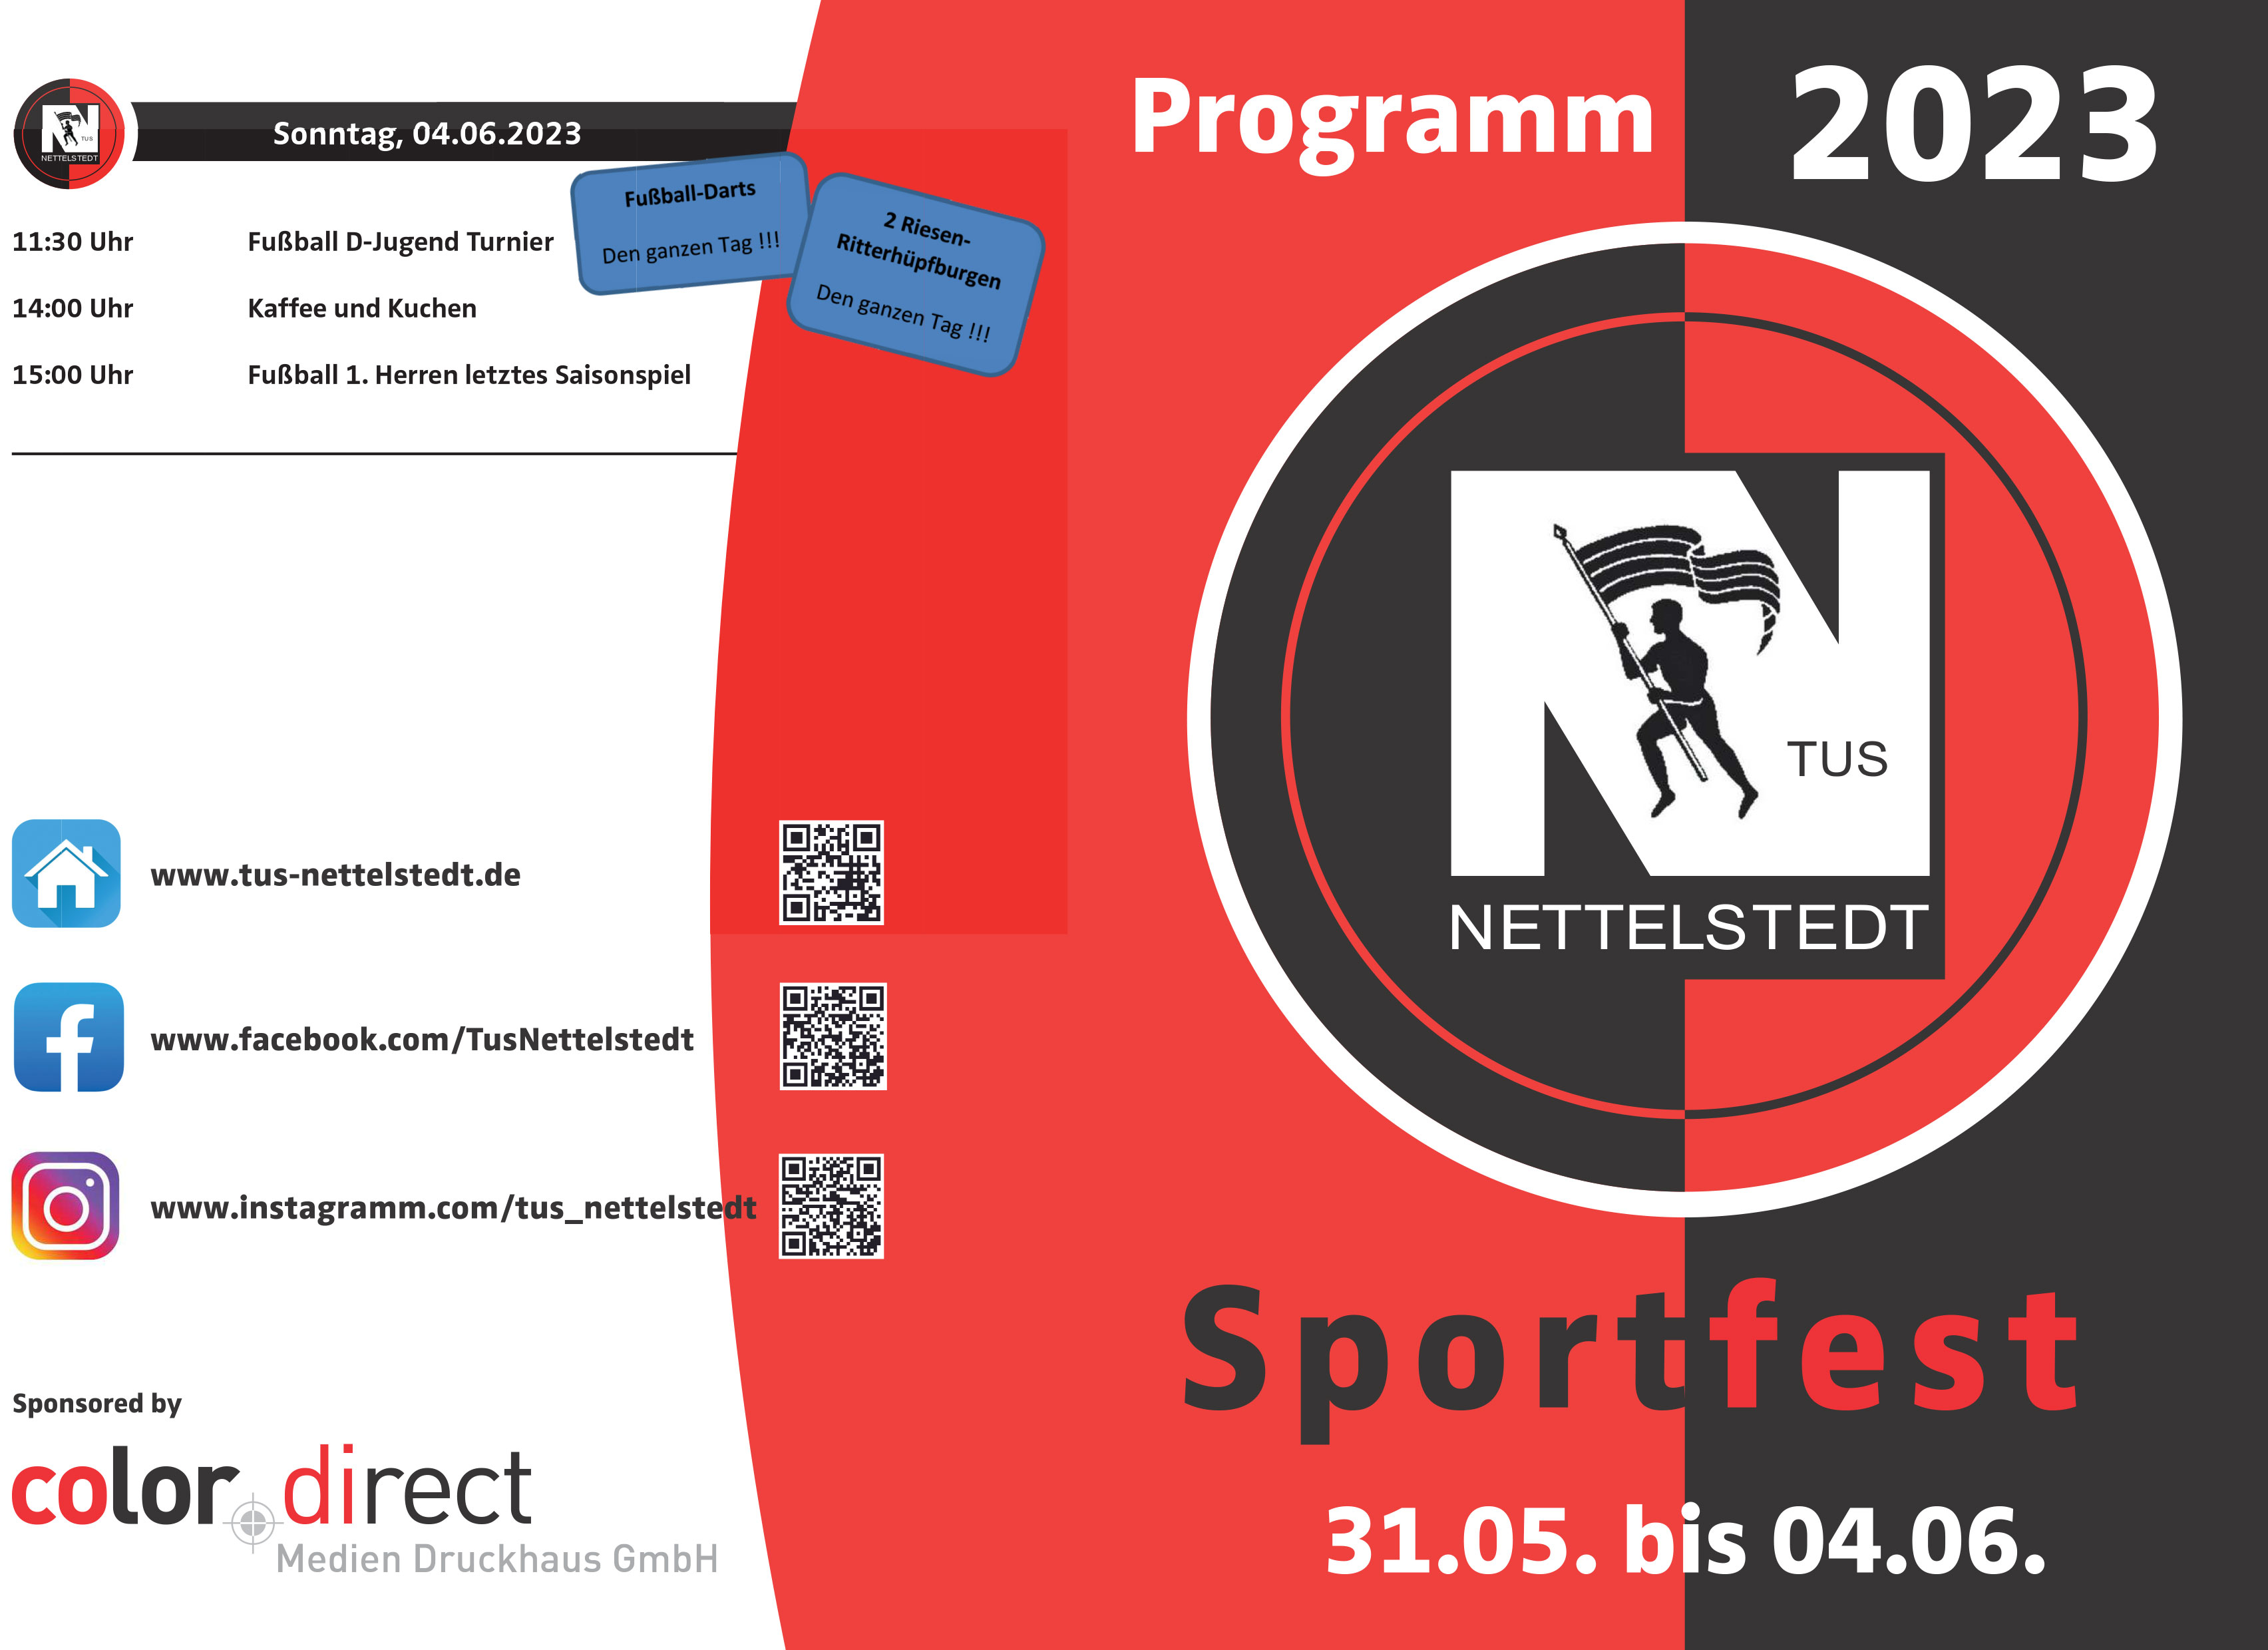 2023 04 25 Programm Sportfest Nettelstedt 2023